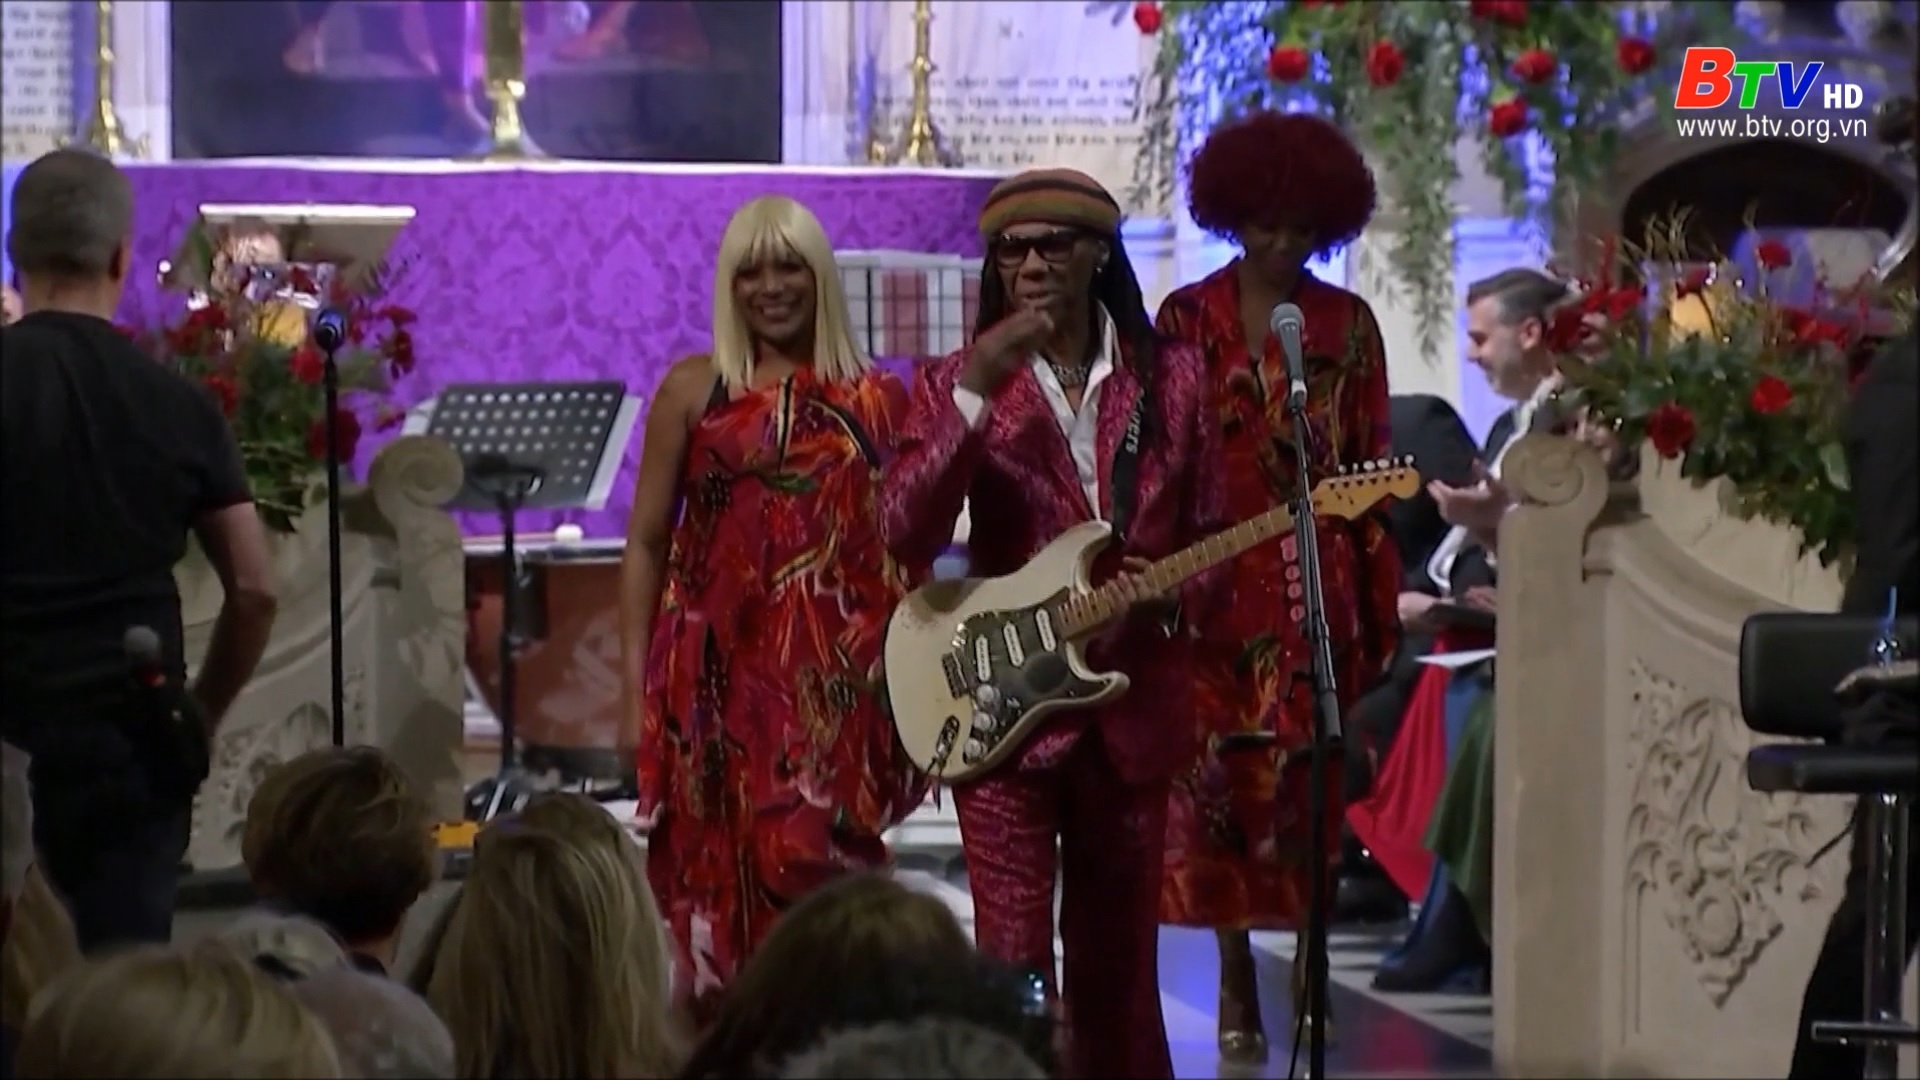 Ban nhạc Chic biểu diễn tại chương trình giáng sinh của Nordoff Robbins